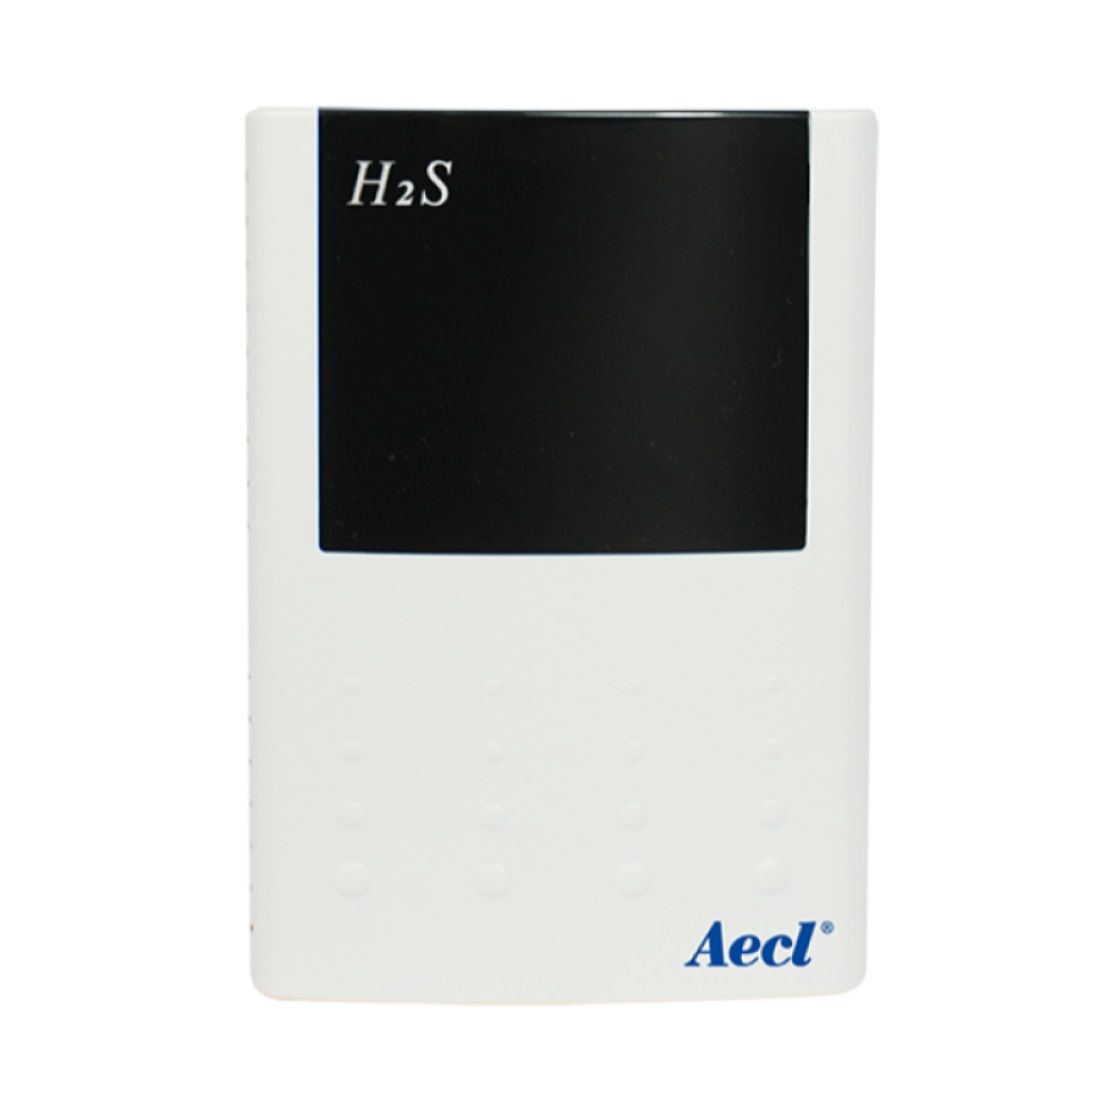 Solución de detección inalámbrica para el monitoreo ambiental de H2S.